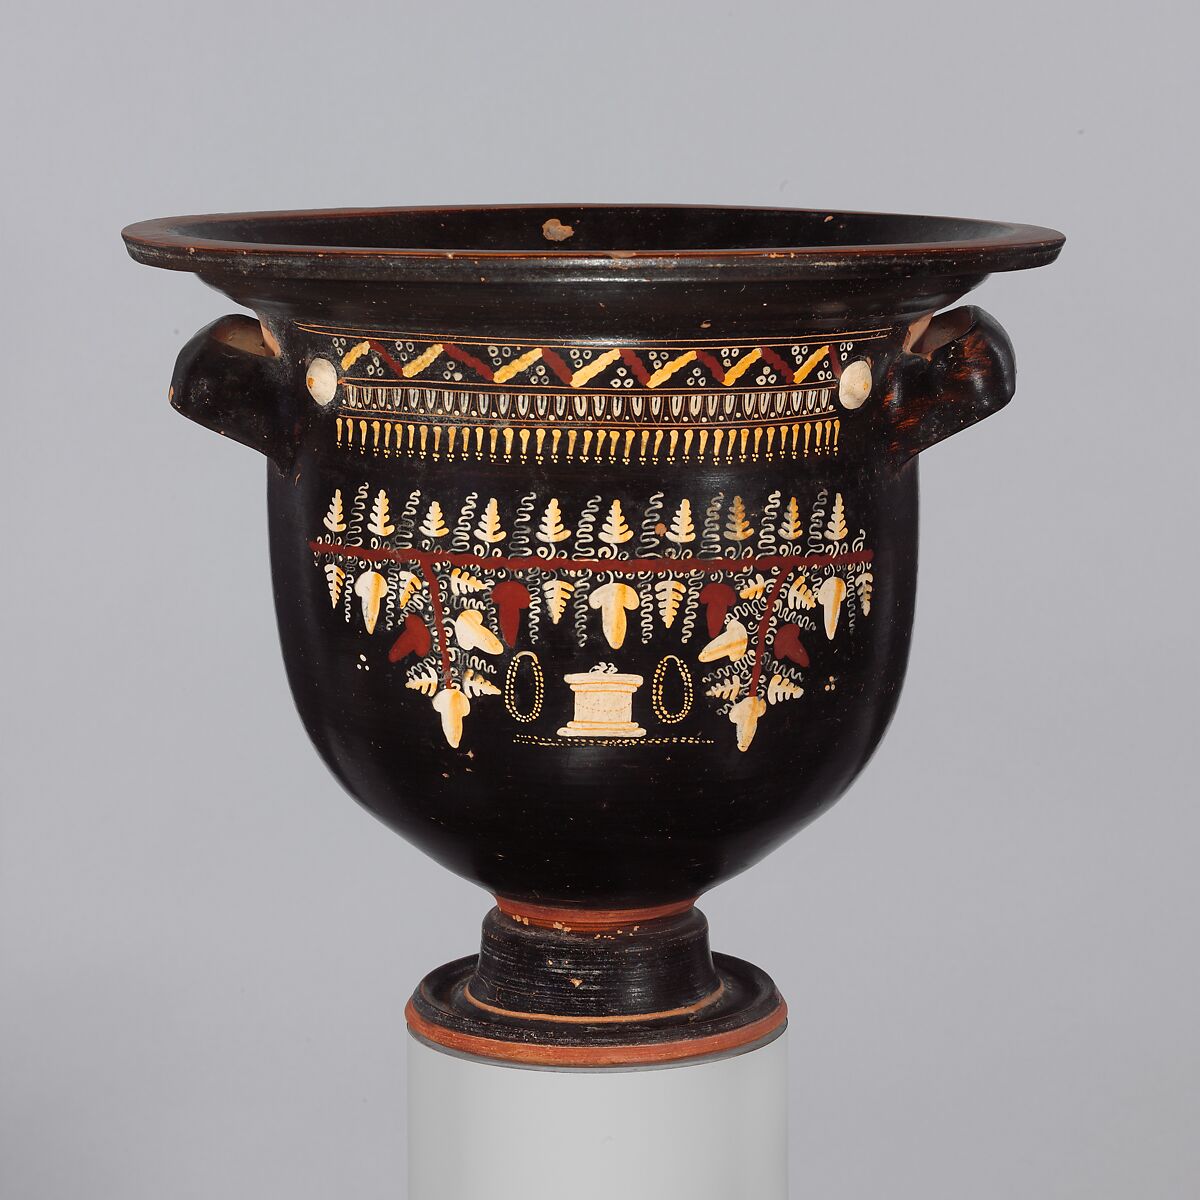 Terracotta bell-krater (mixing bowl), Terracotta, Greek, South Italian, Apulian, Gnathian 